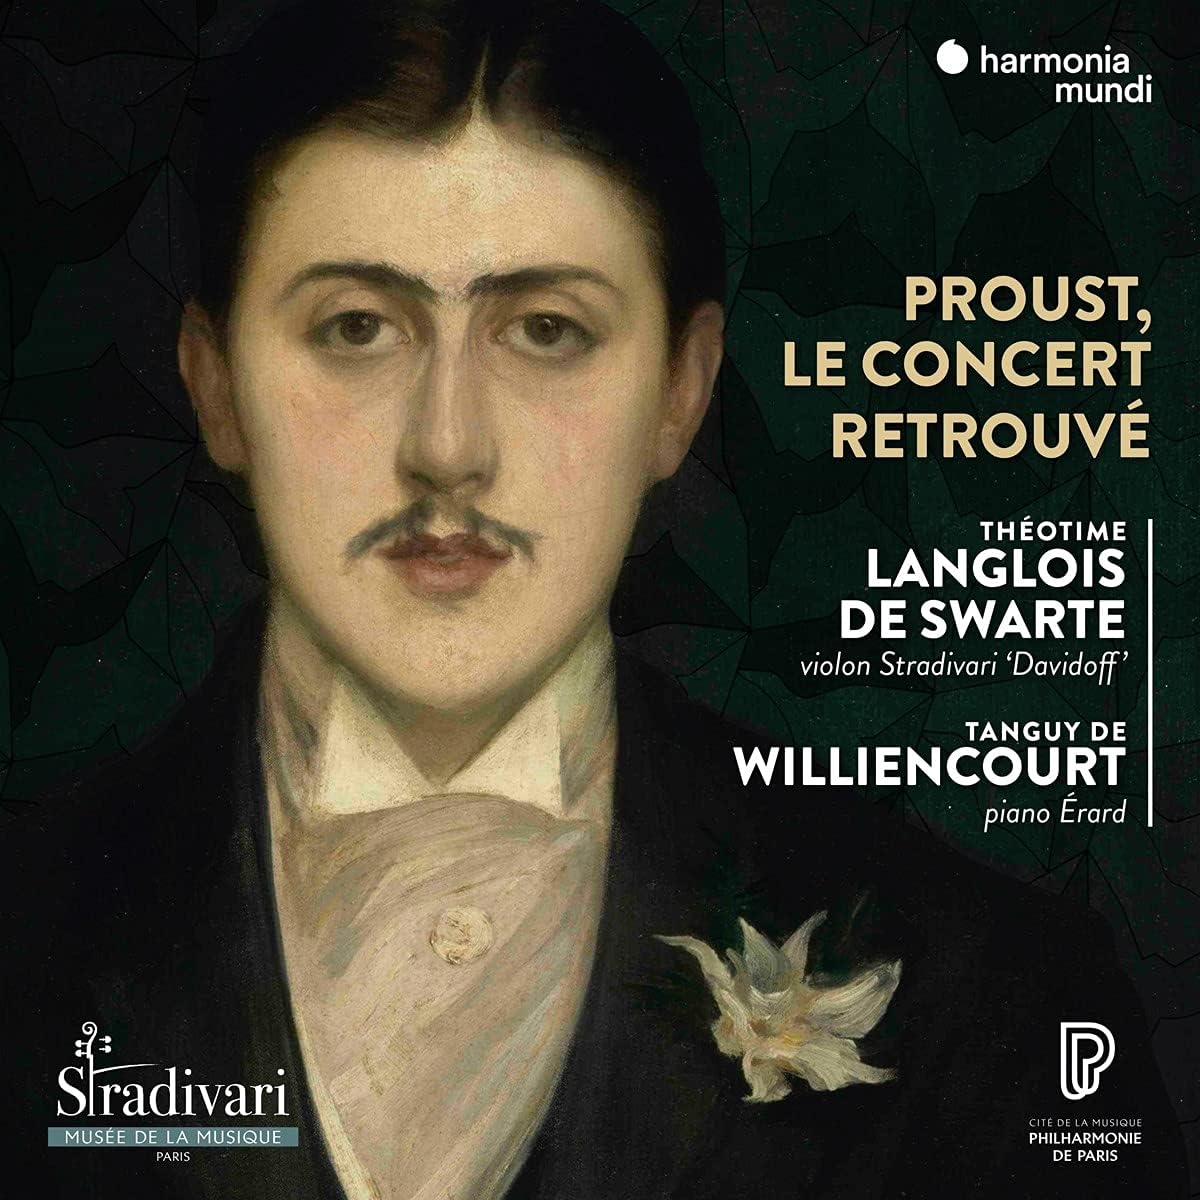 Proust, Le Concert Retrouve | Theotime Langlois De Swarte, Tanguy Williencourt